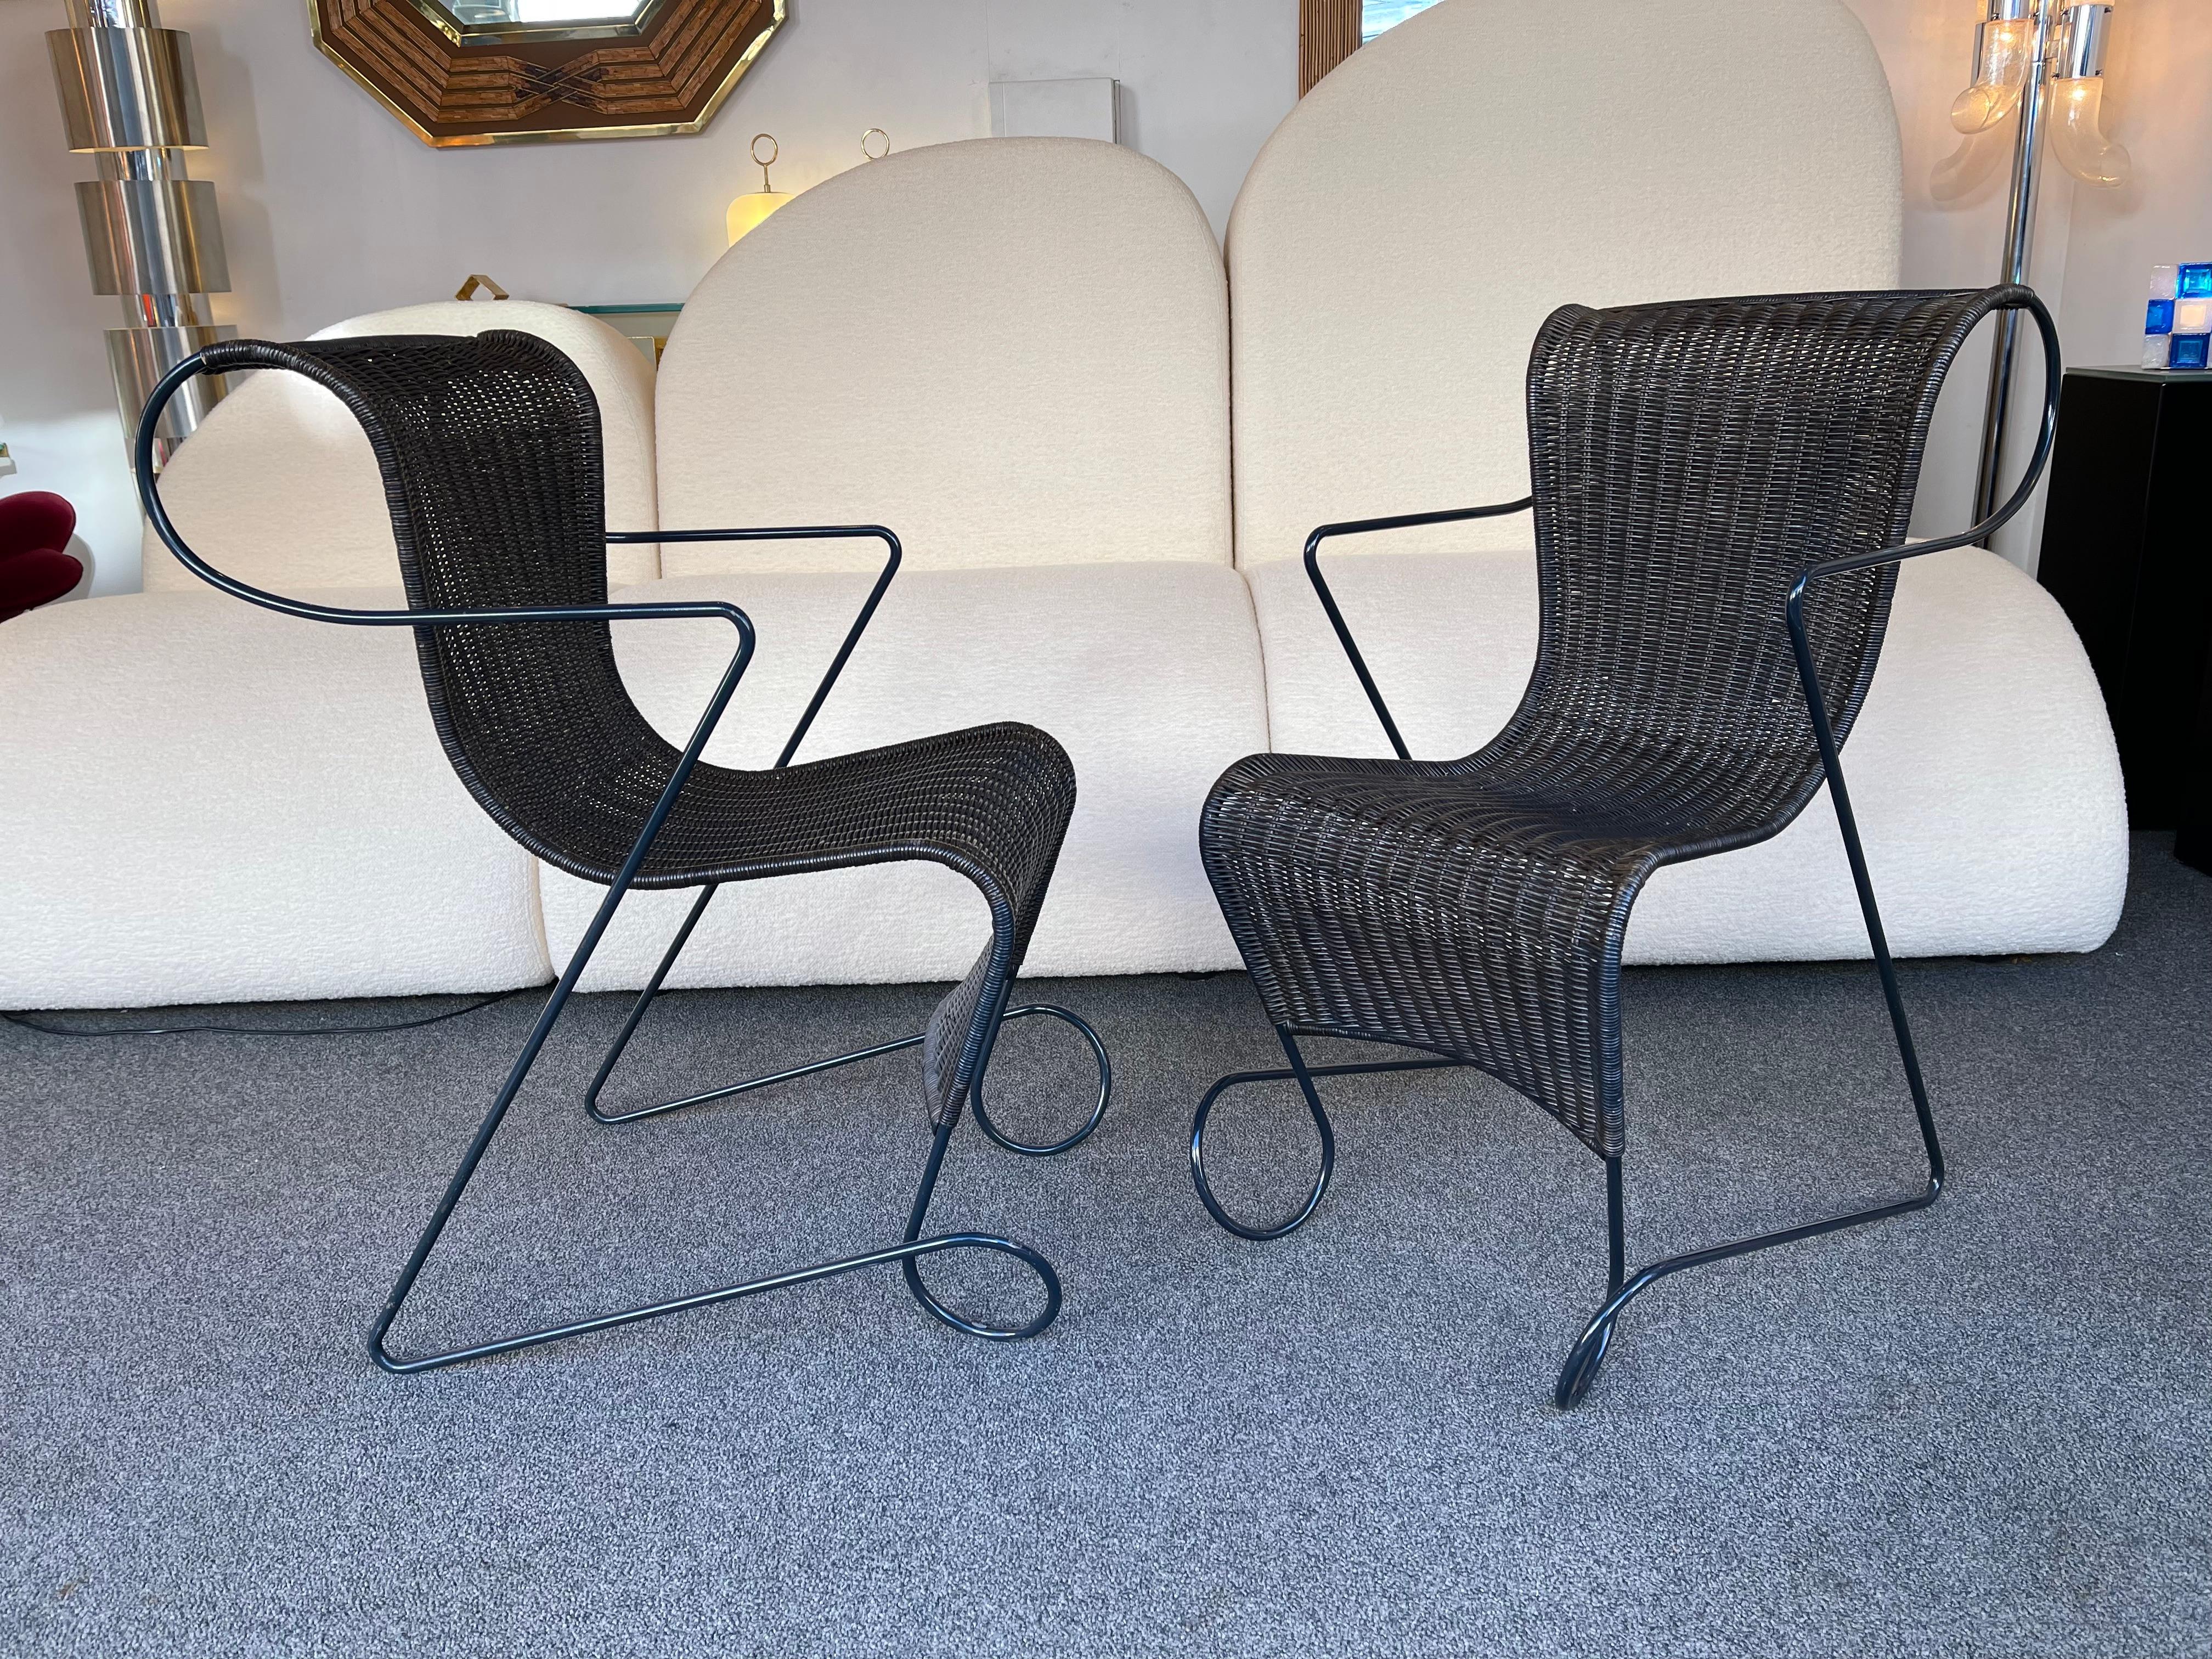 Ensemble de 4 fauteuils de salle à manger modèle Zigo par le designer Ron Arad pour l'éditeur italien Driade en 1993. Métal laqué et rotin. Des designers célèbres comme Gio Ponti, Gianfranco Frattini, Cassina, Osvaldo Borsani, Joe Colombo, Vico